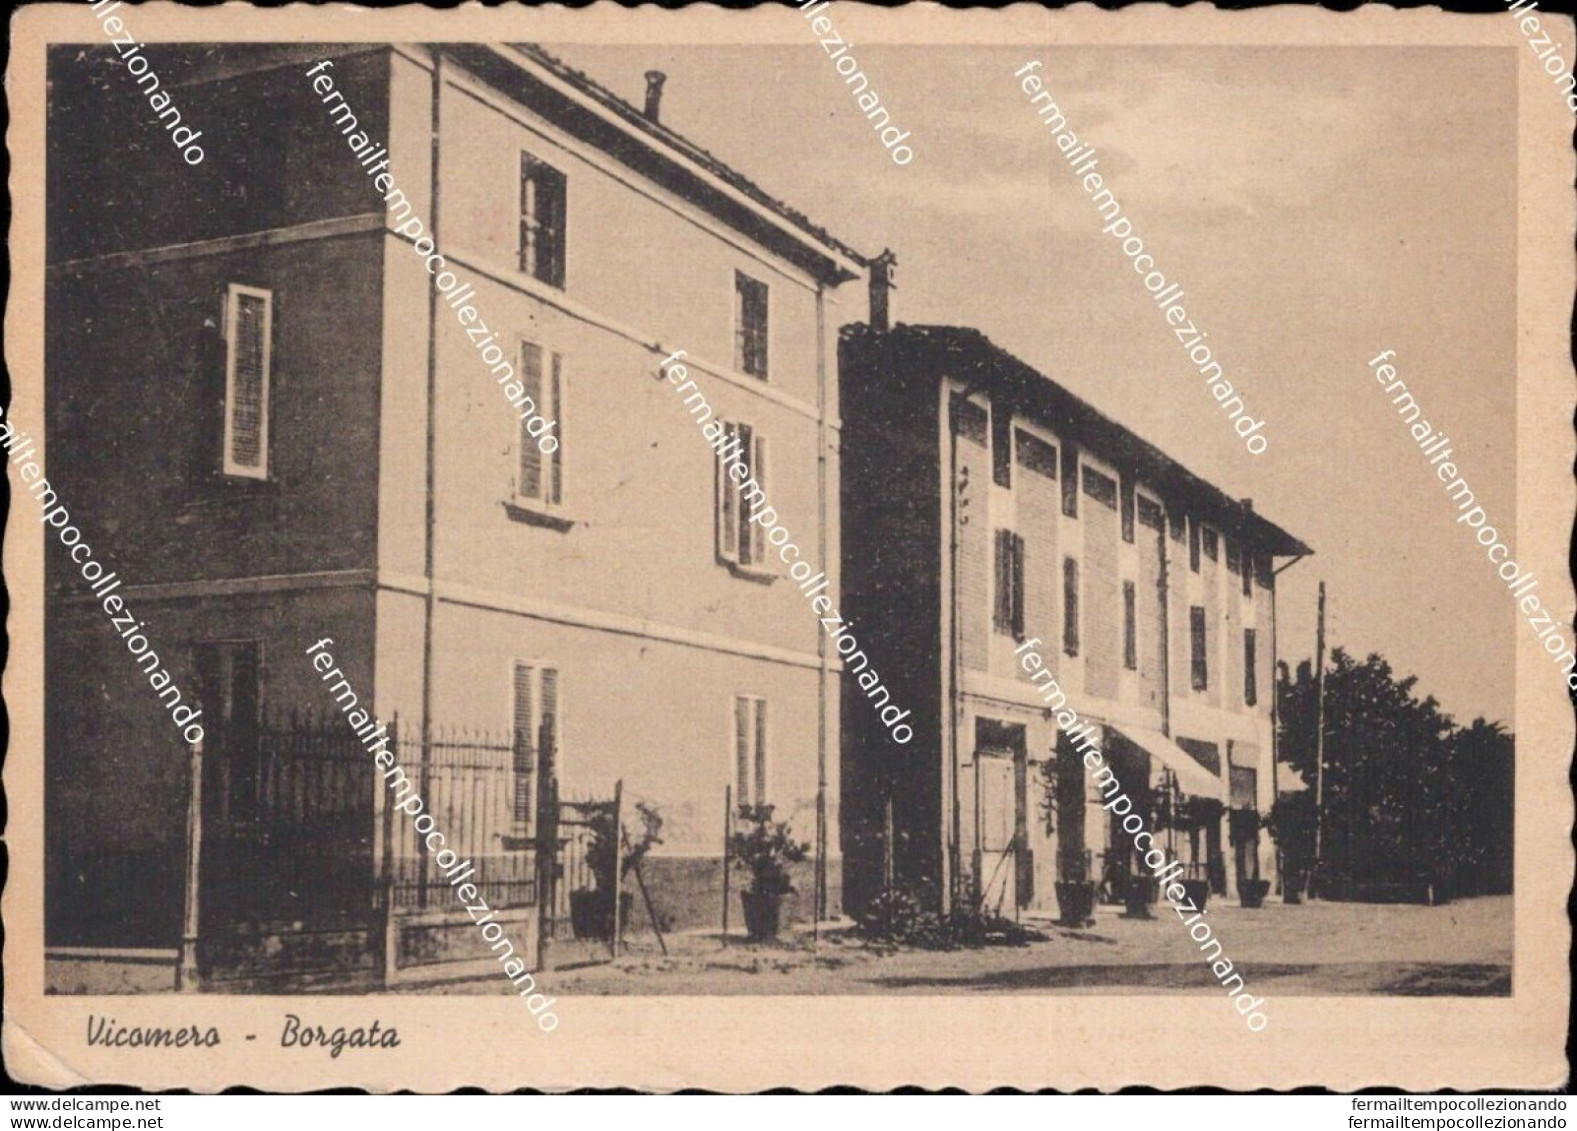 Bc703  Cartolina Vicomero Borgata Provincia Di Parma Emilia Romagna - Parma